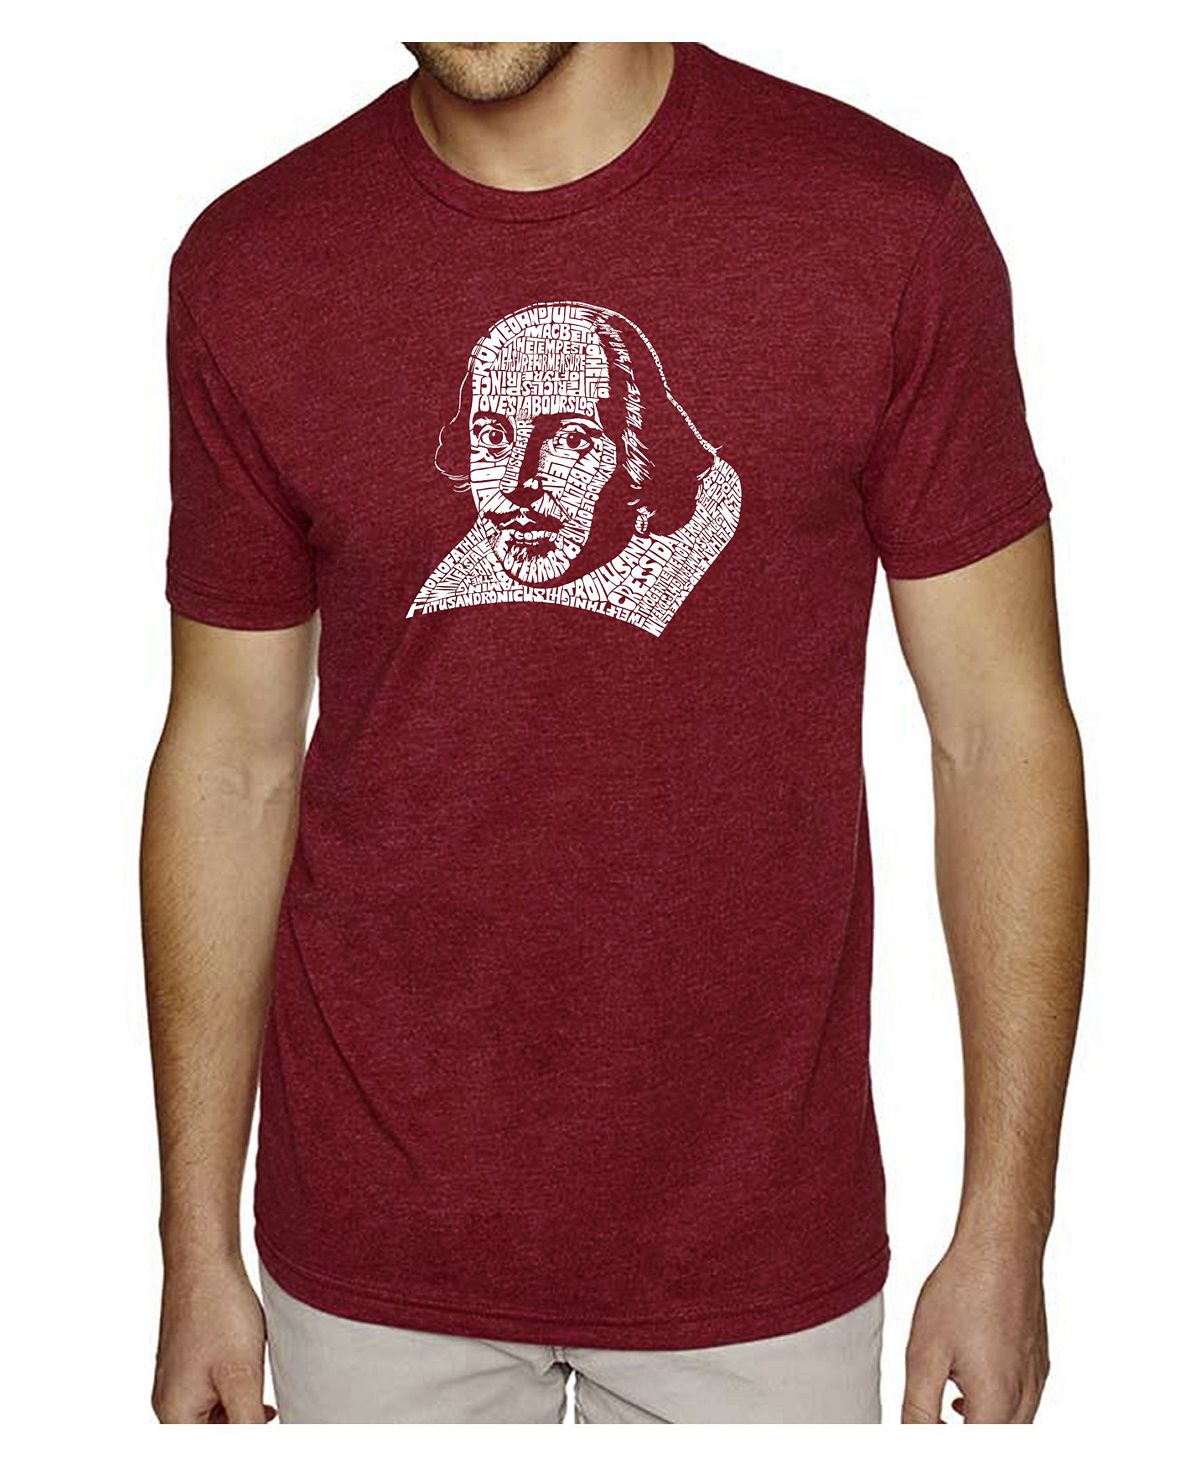 Мужская футболка премиум-класса word art - шекспир LA Pop Art йейтс уильям батлер великие поэты мира